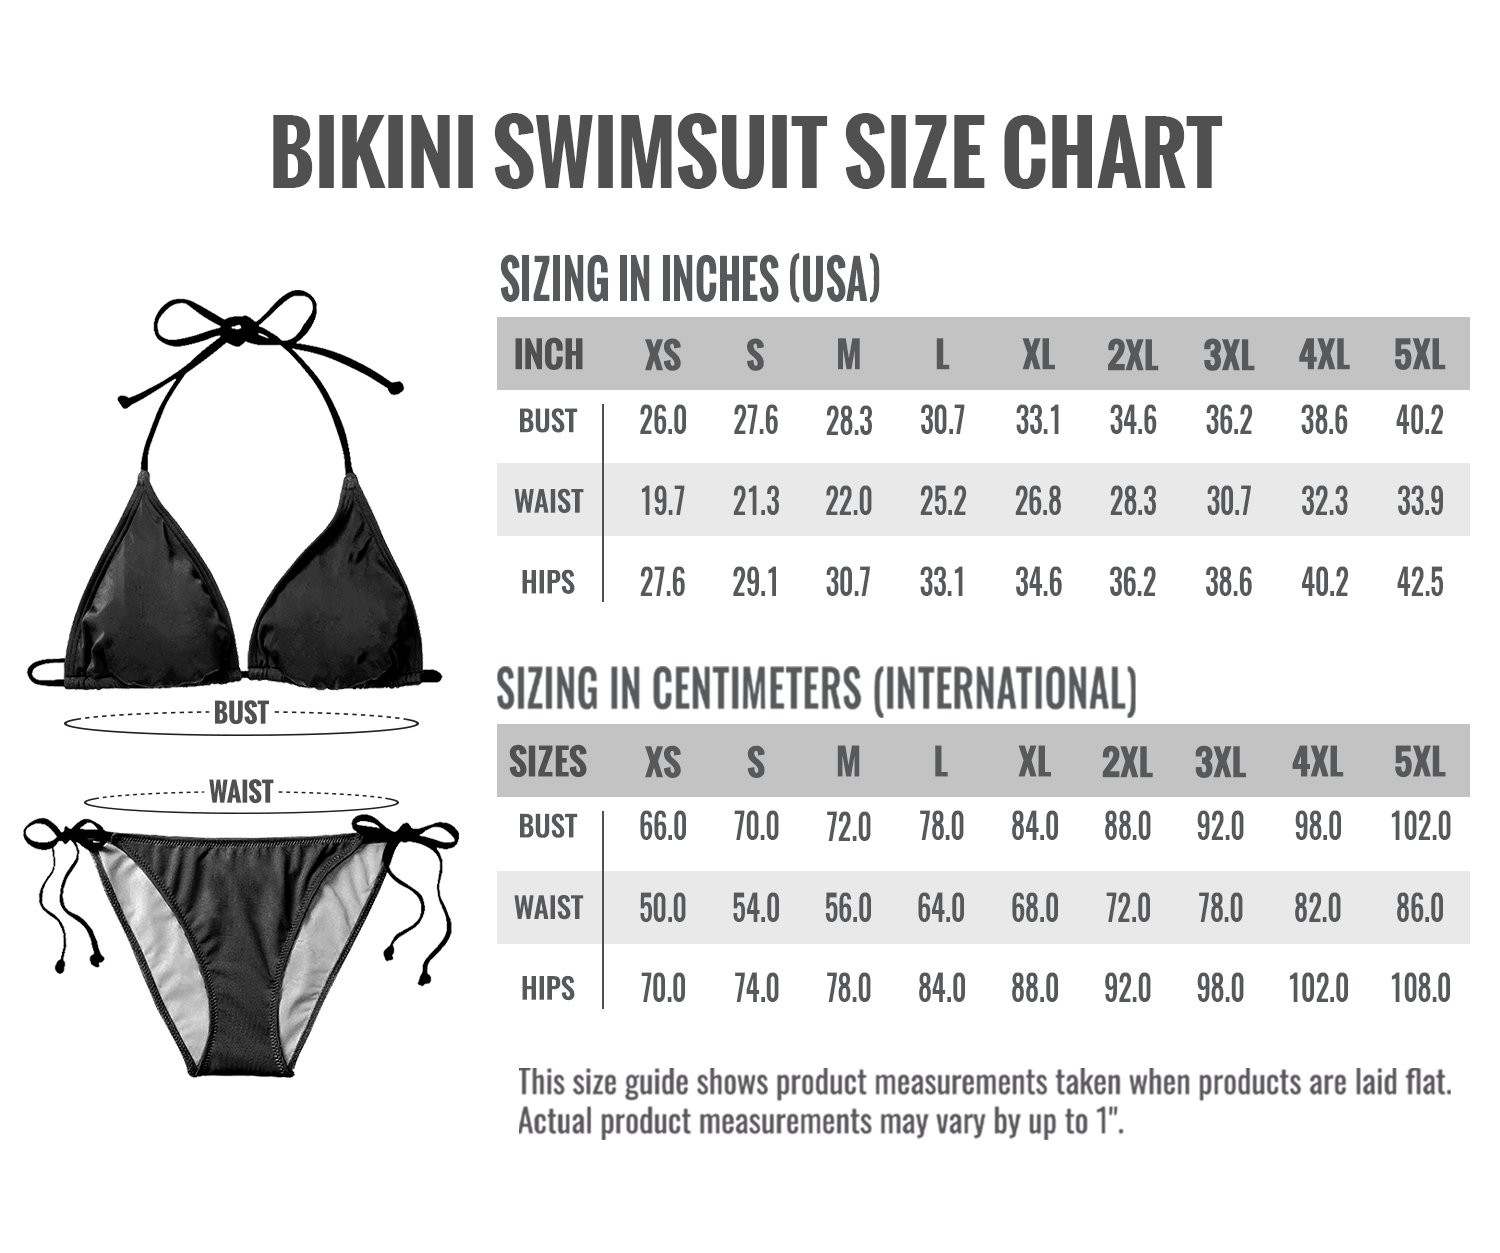 Two-piece bikini sizechart